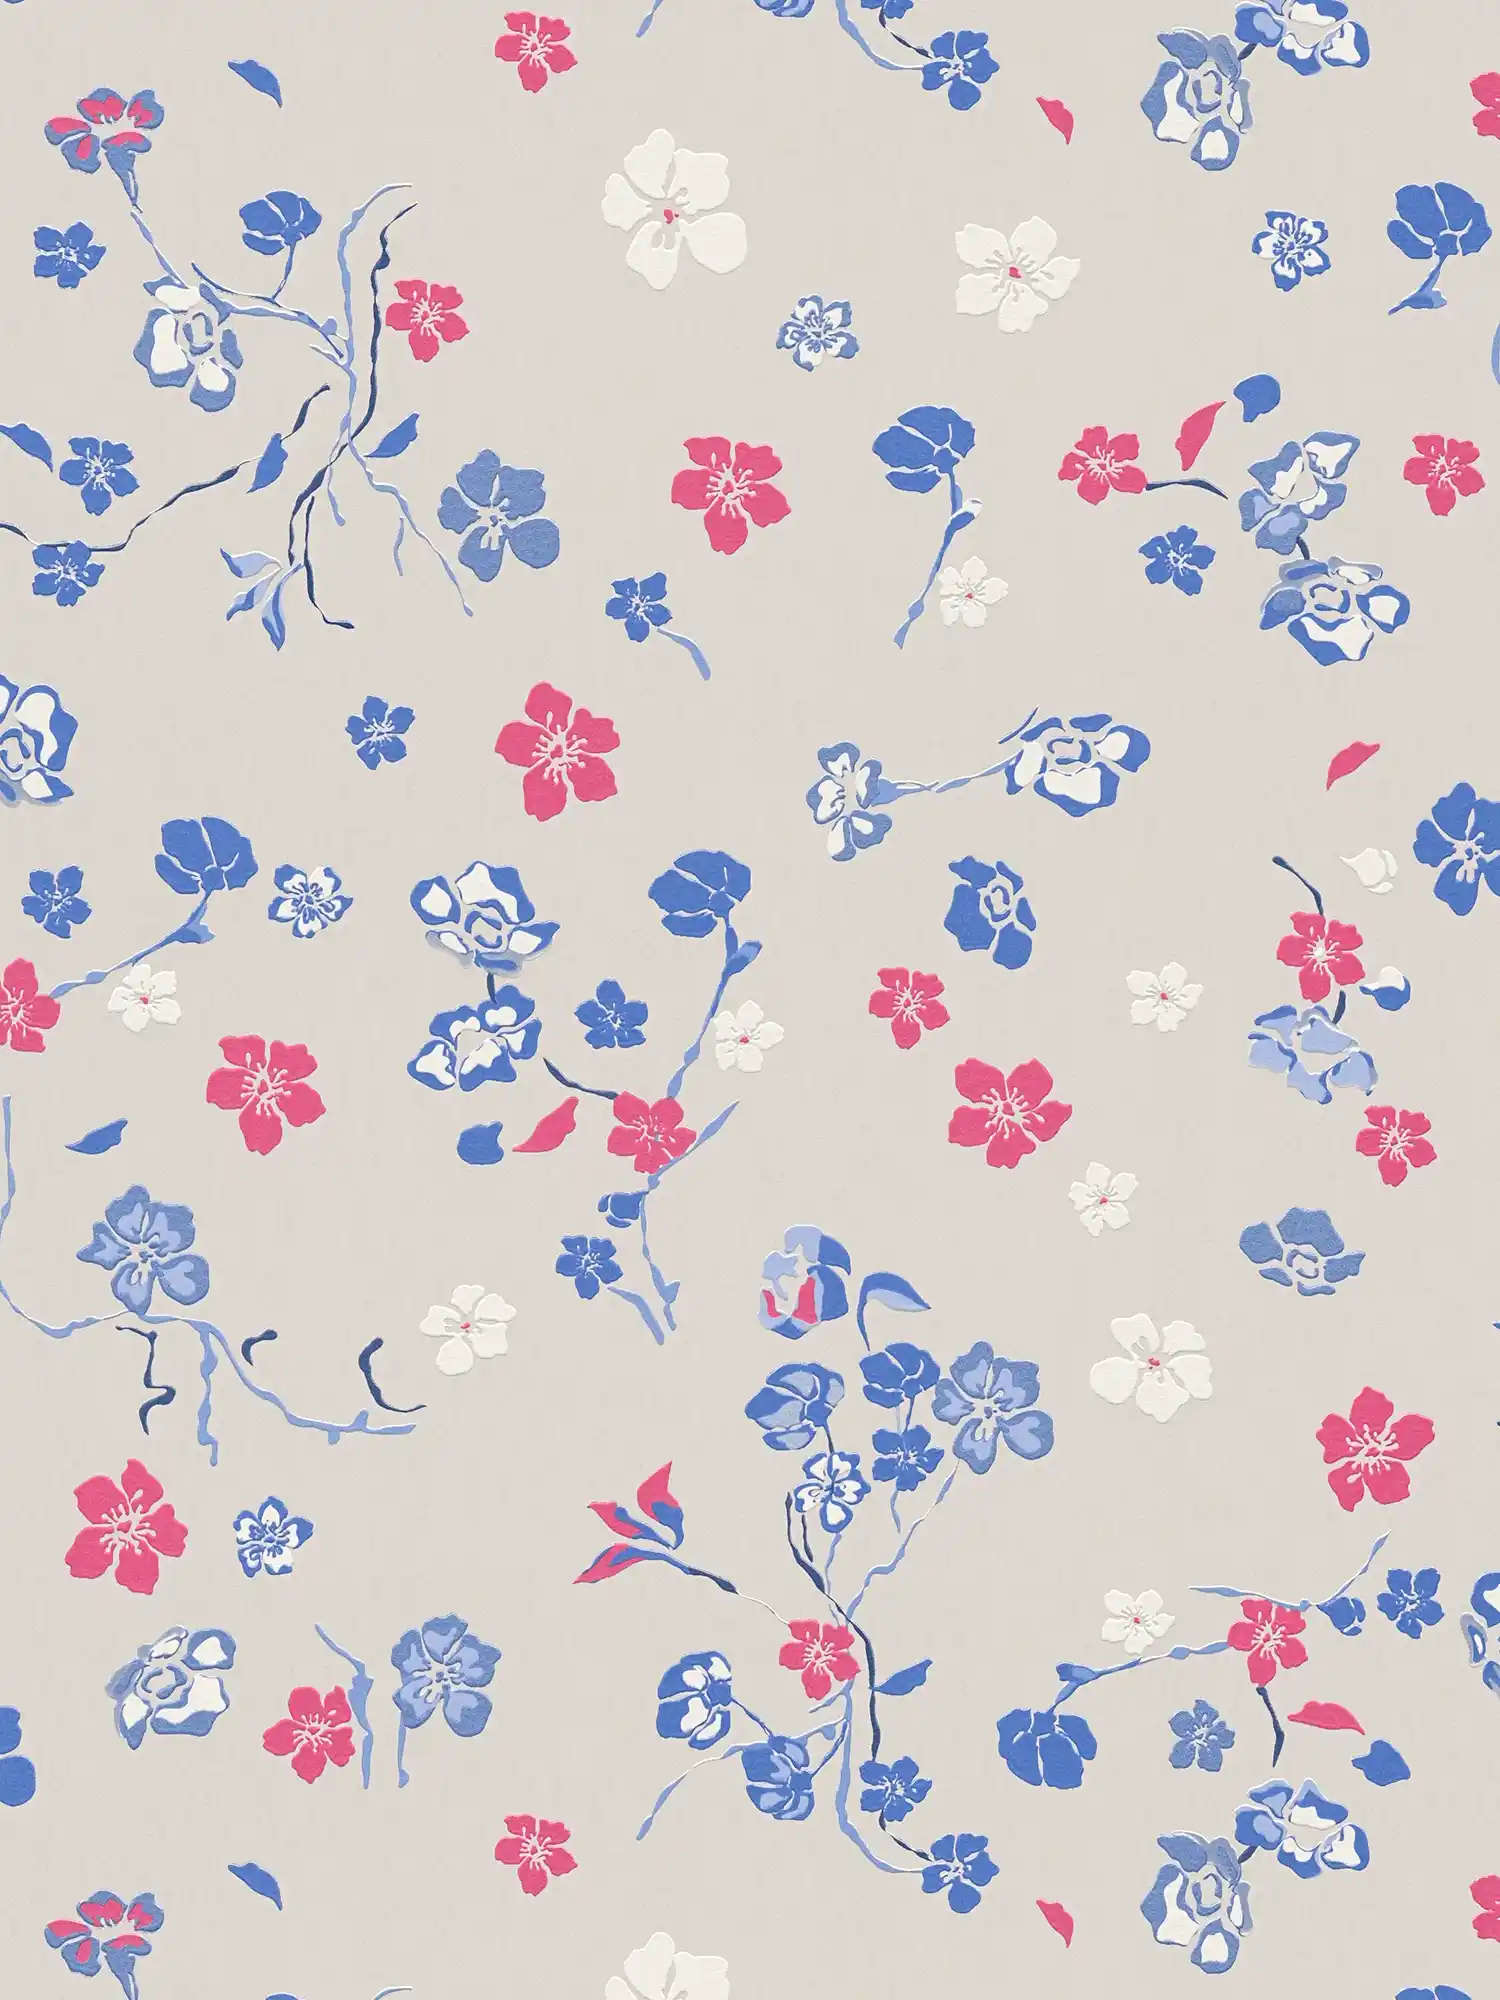 Papier peint intissé avec motif floral fantaisie - gris clair, bleu, rose
